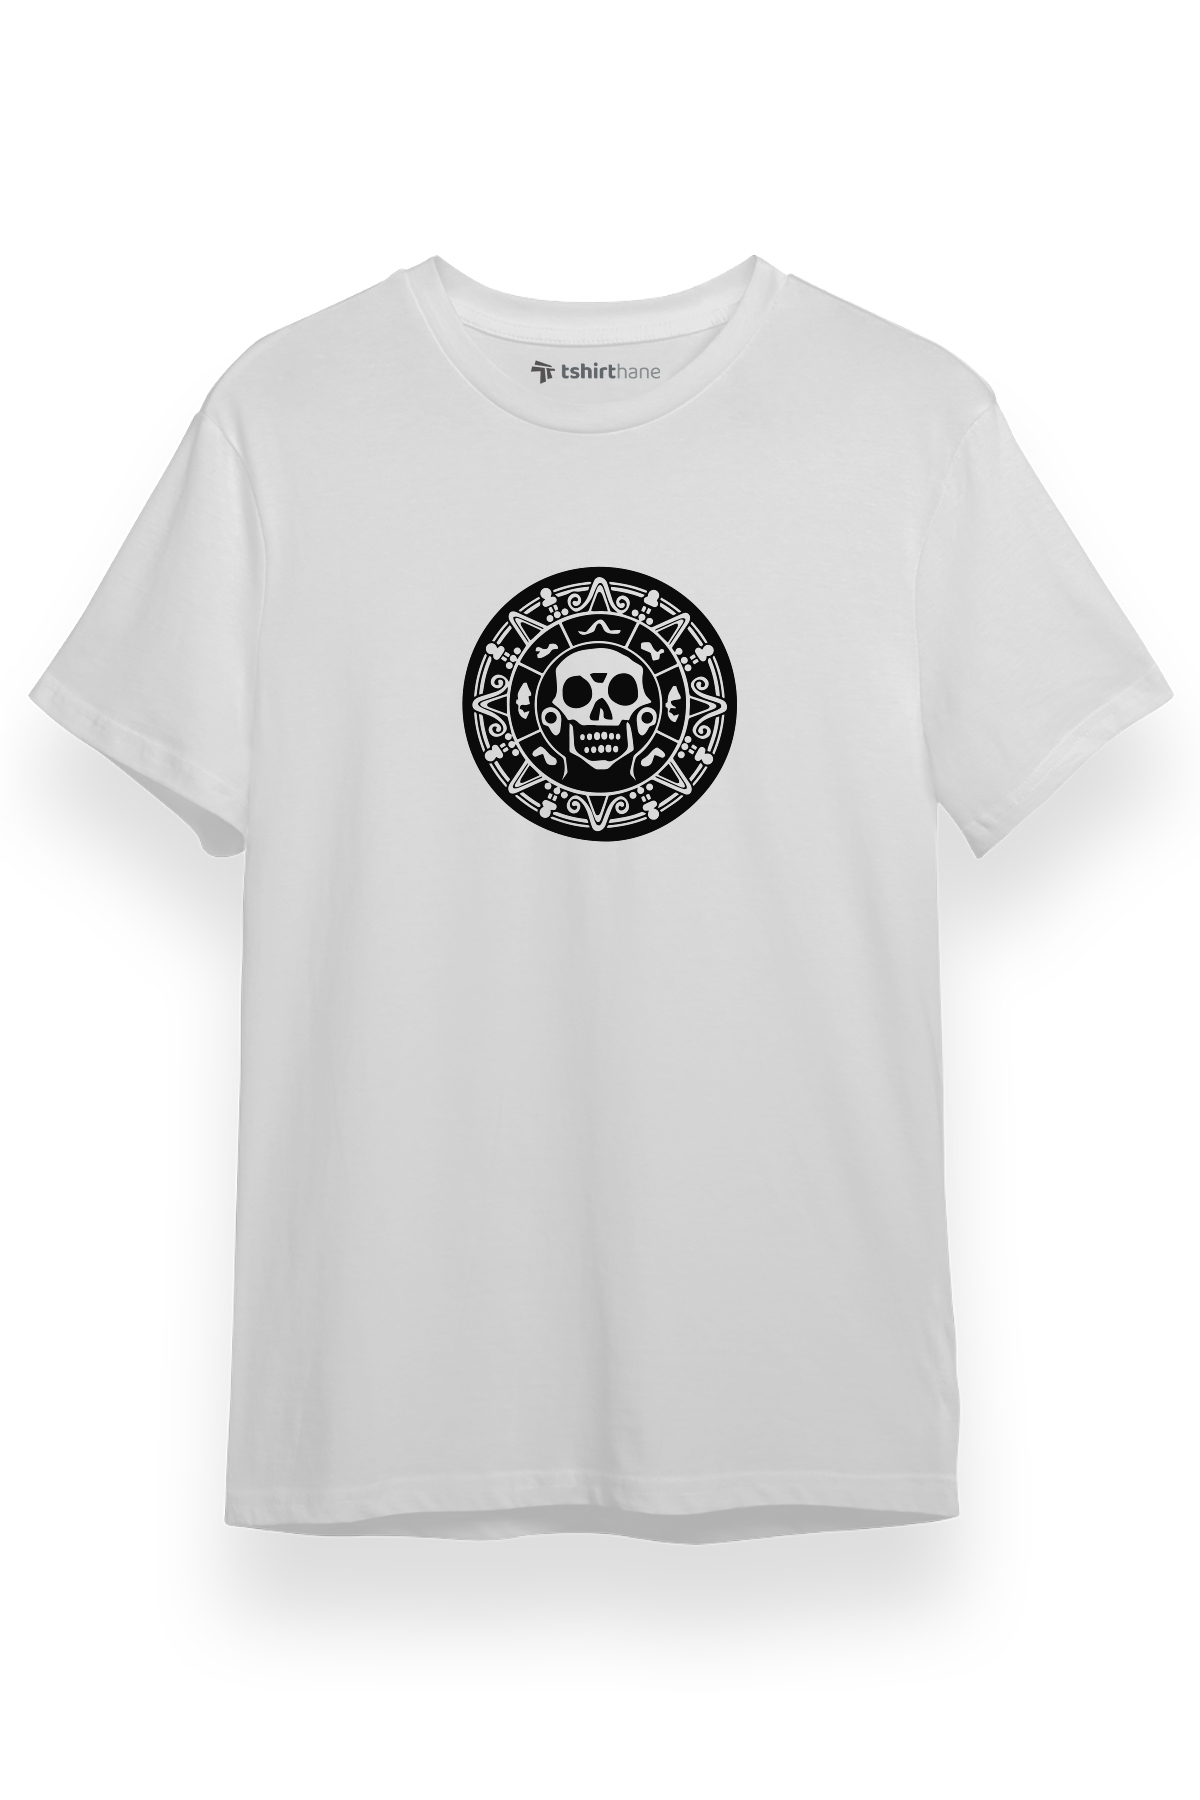 Pirate Of The Carribean Money Logo Beyaz Kısa kol Erkek Tshirt